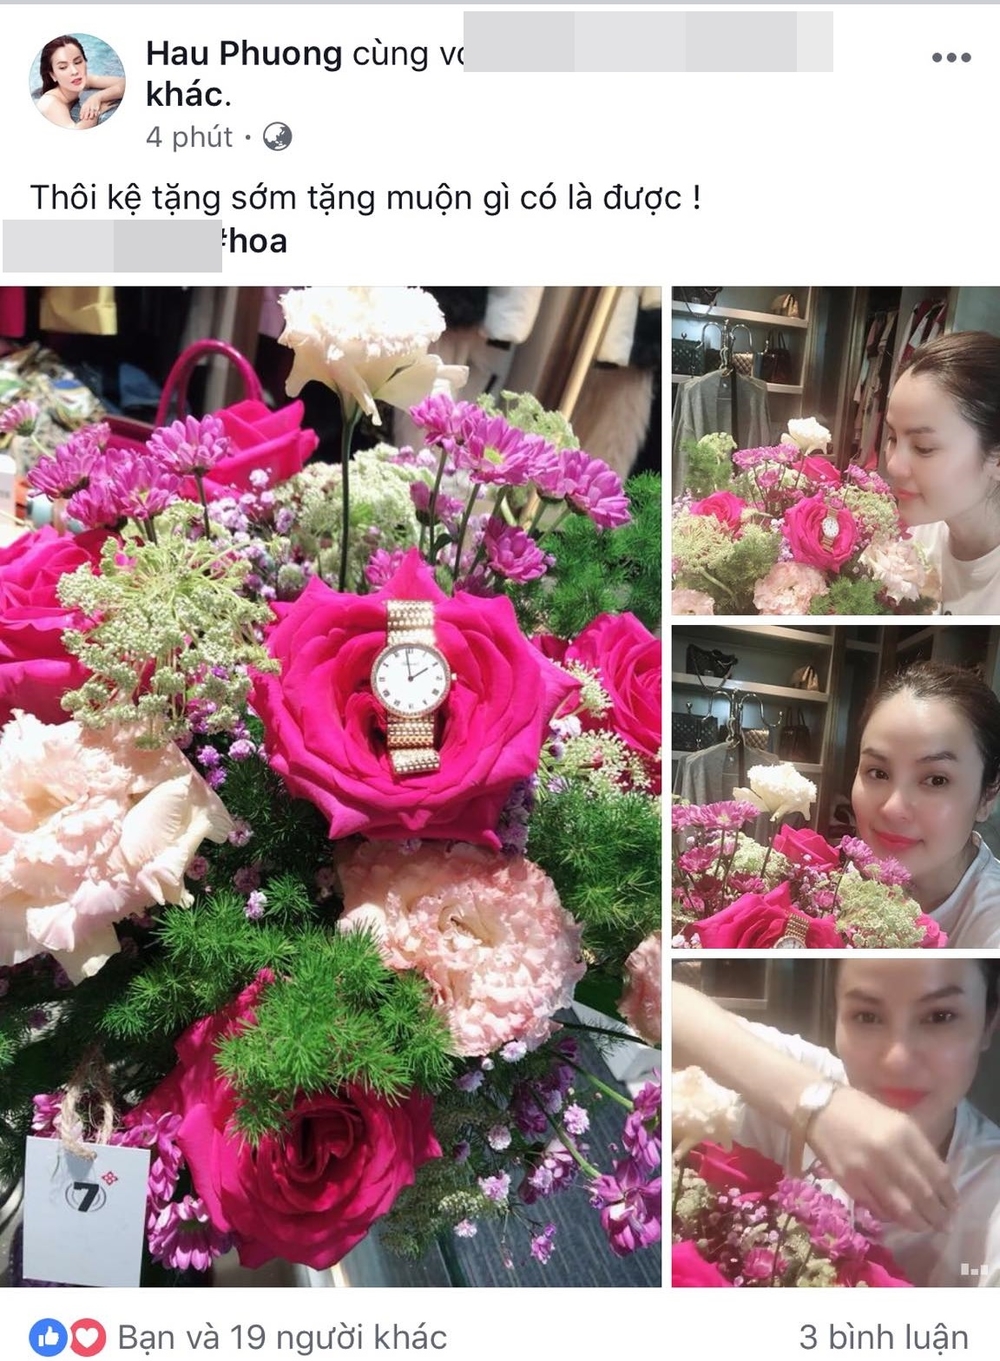 
Hoa hậu Phương Lê cũng nhận đóa hoa khổng lồ và chiếc đồng hồ sang trọng trong ngày Quốc tế Phụ nữ 20/10.  - Tin sao Viet - Tin tuc sao Viet - Scandal sao Viet - Tin tuc cua Sao - Tin cua Sao